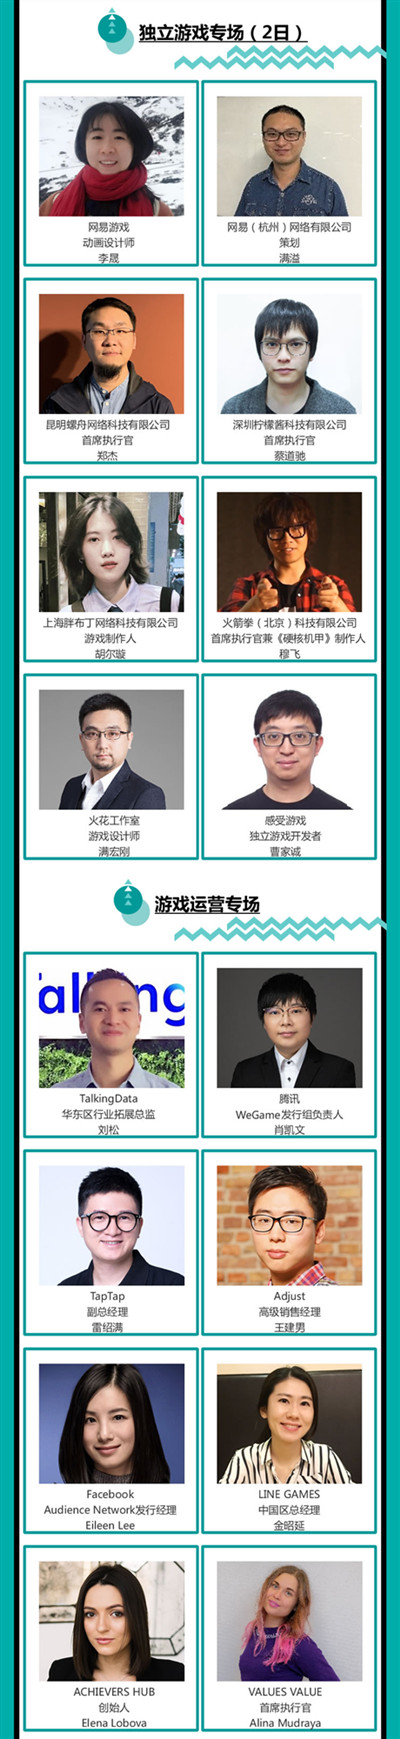 2019年第十七届ChinaJoy展前预览(大型会议篇—CGDC)正式发布